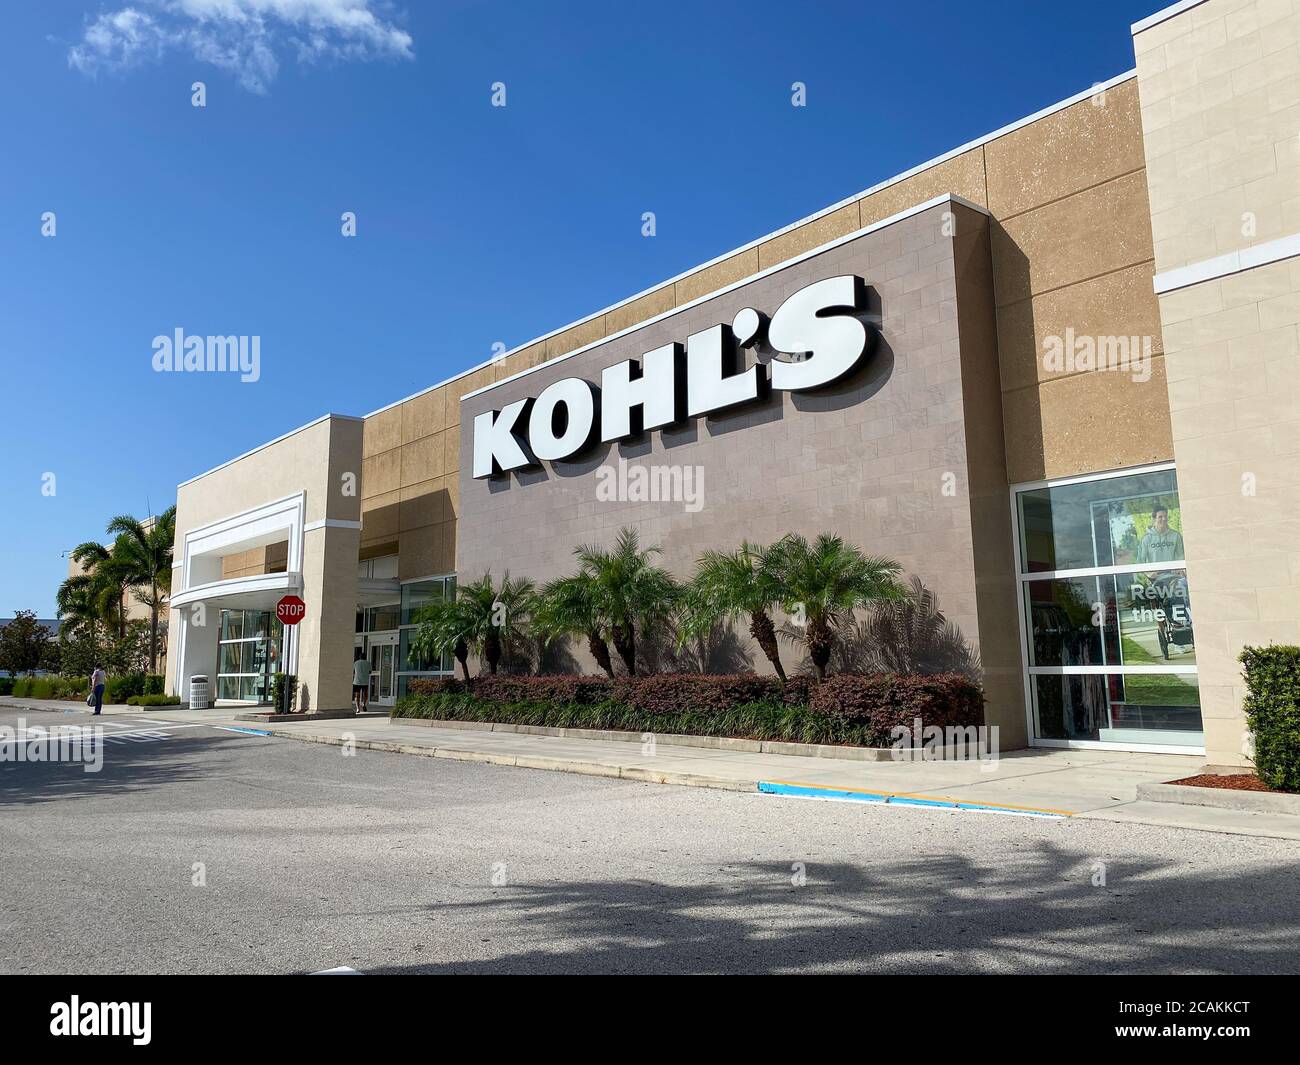 Kohl's localizações em Orlando - Ver horas, orientações, dicas e